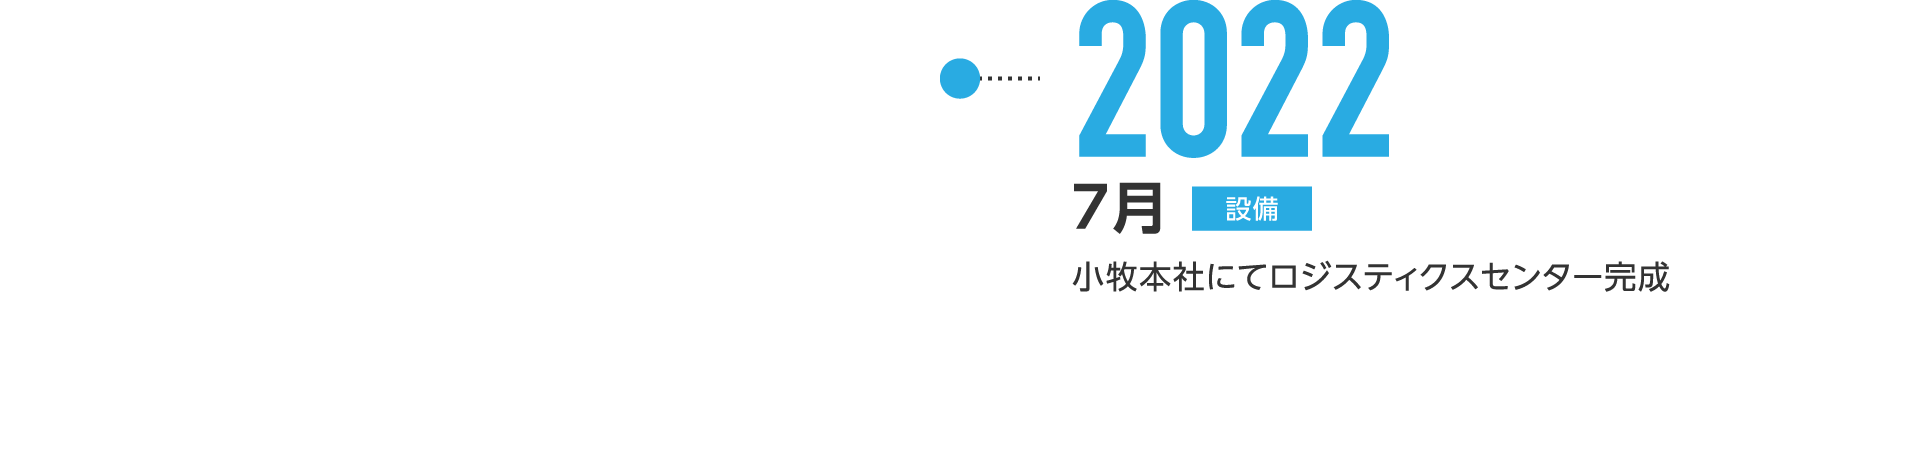 2022年7月-小牧本社にてロジスティクスセンター完成